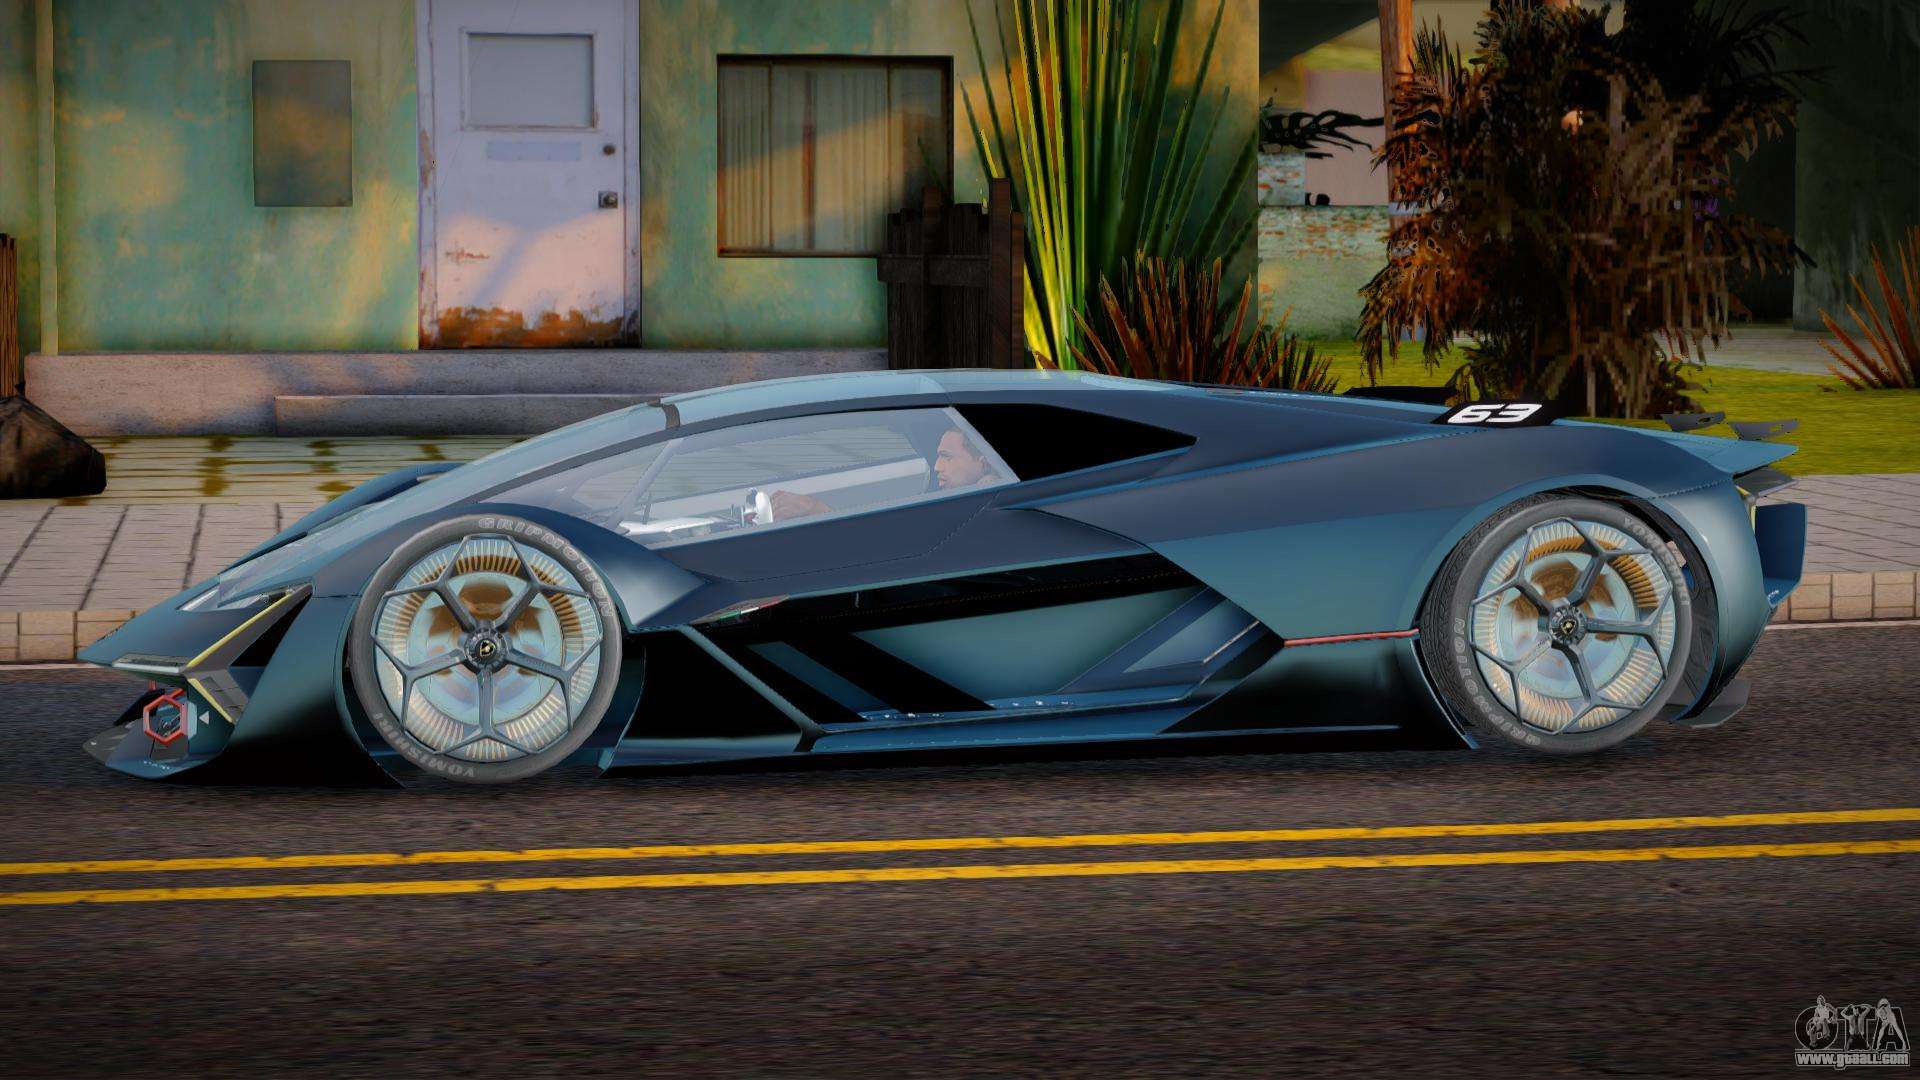 Lamborghini Terzo Millennio Rocket for GTA San Andreas